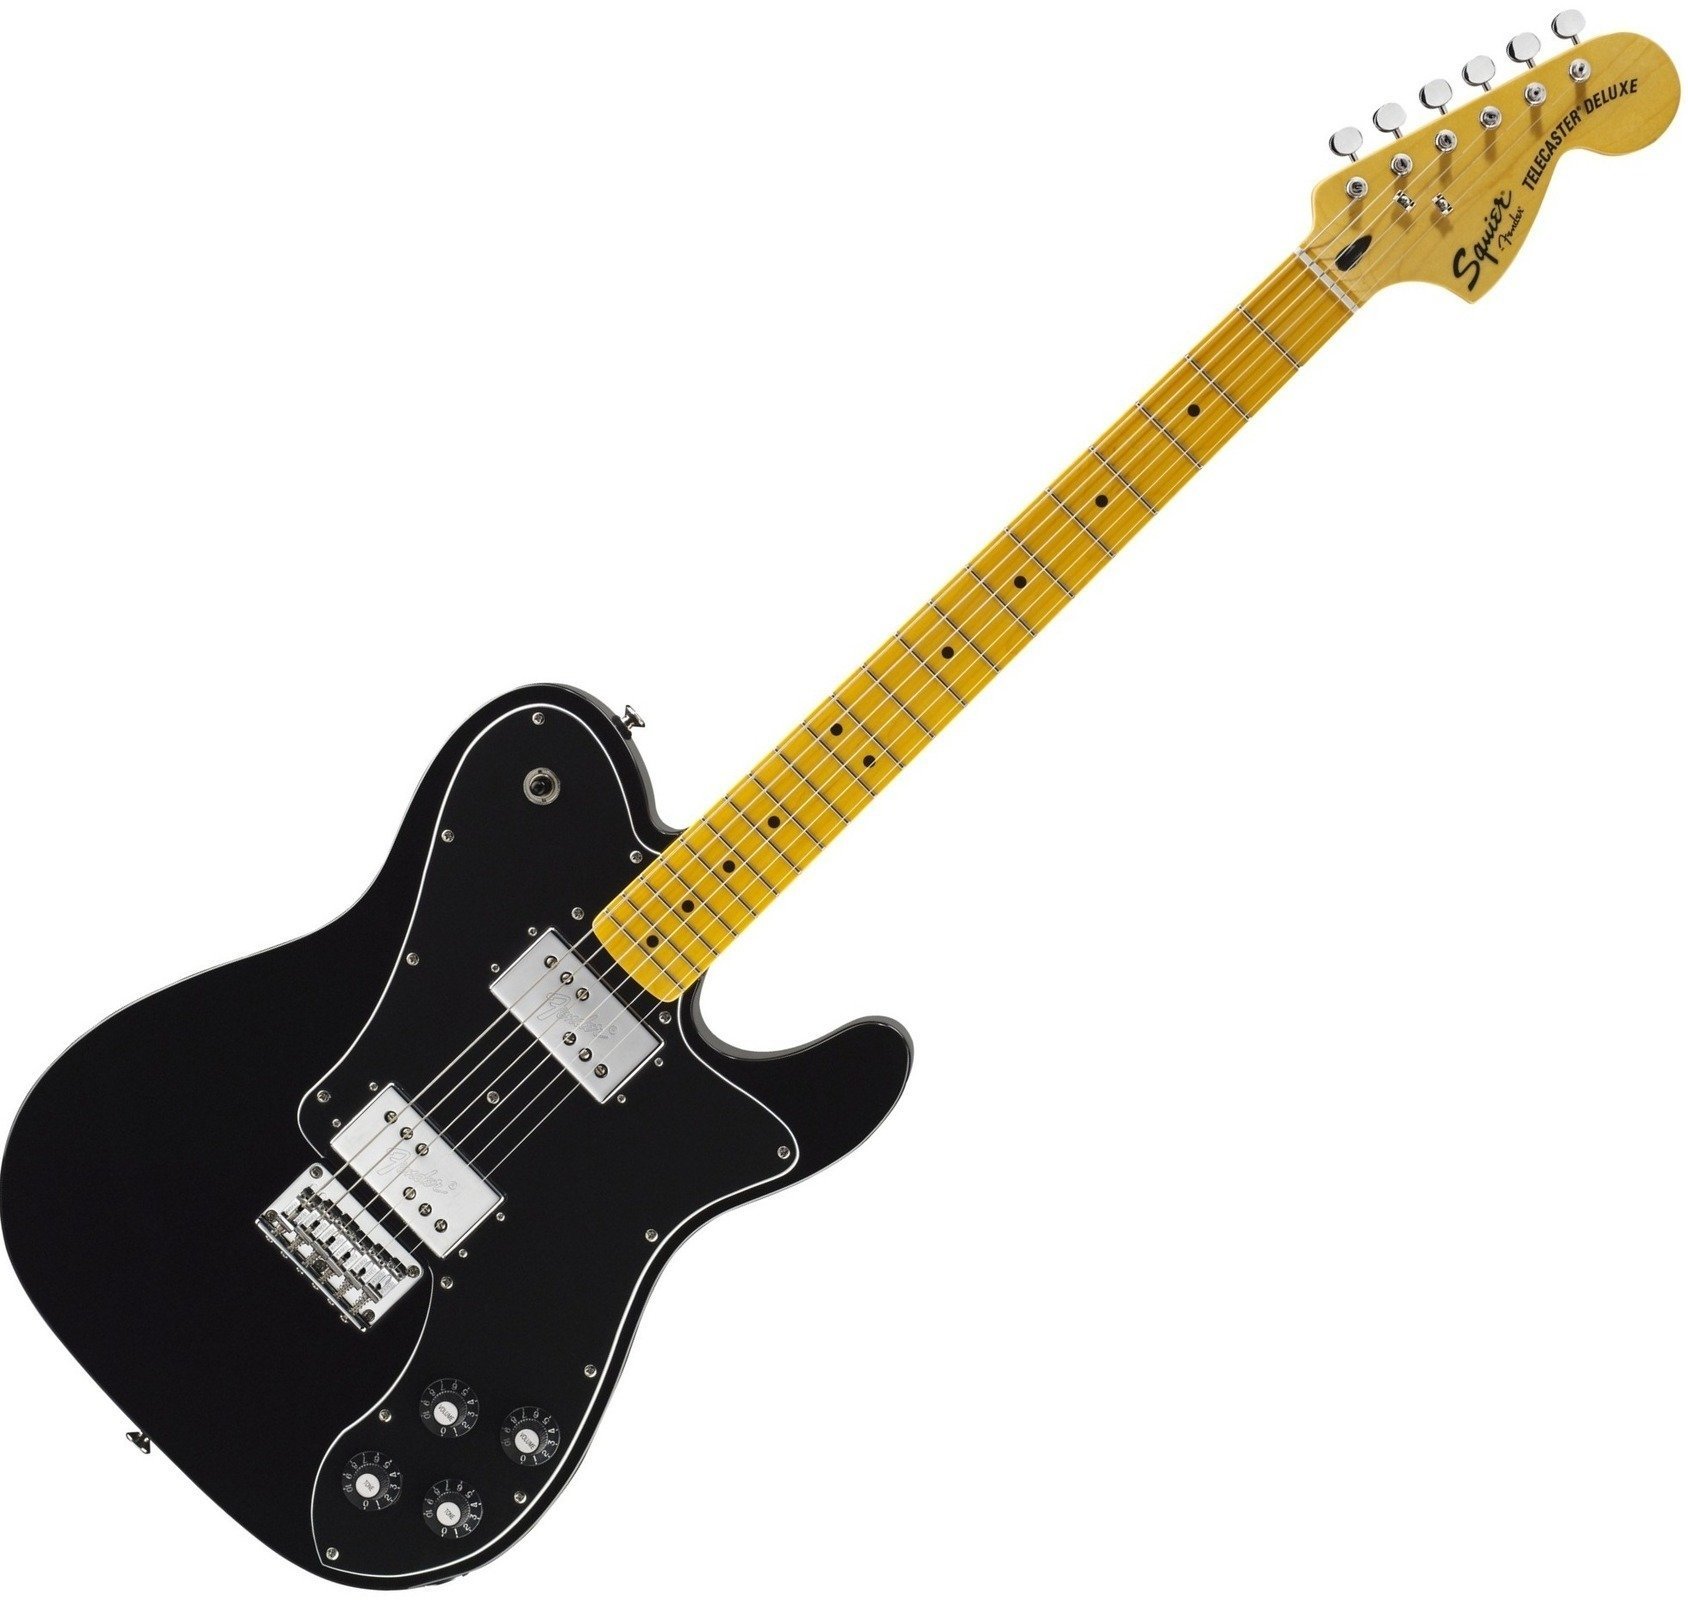 Ηλεκτρική Κιθάρα Fender Squier Vintage Modified Telecaster Deluxe Black